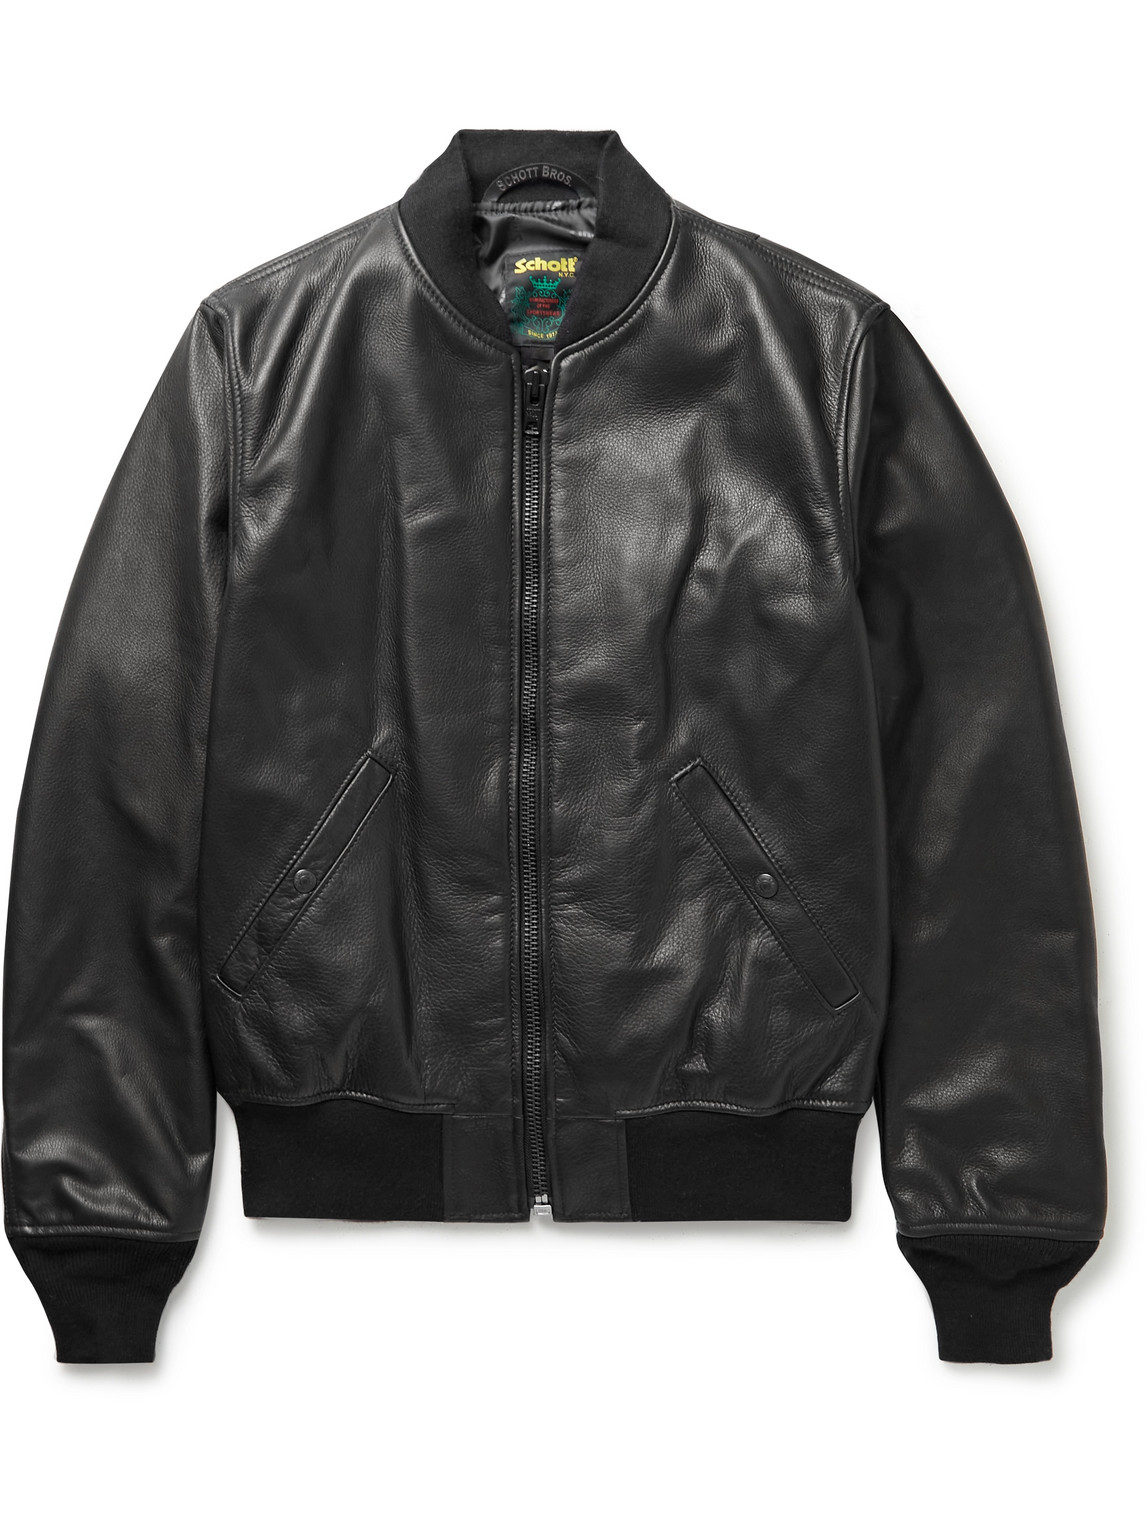 SCHOTT NYC Schott - MA-1 Pebble-Grain Leather Bomber Jacket - Men - Black -  XL for Men